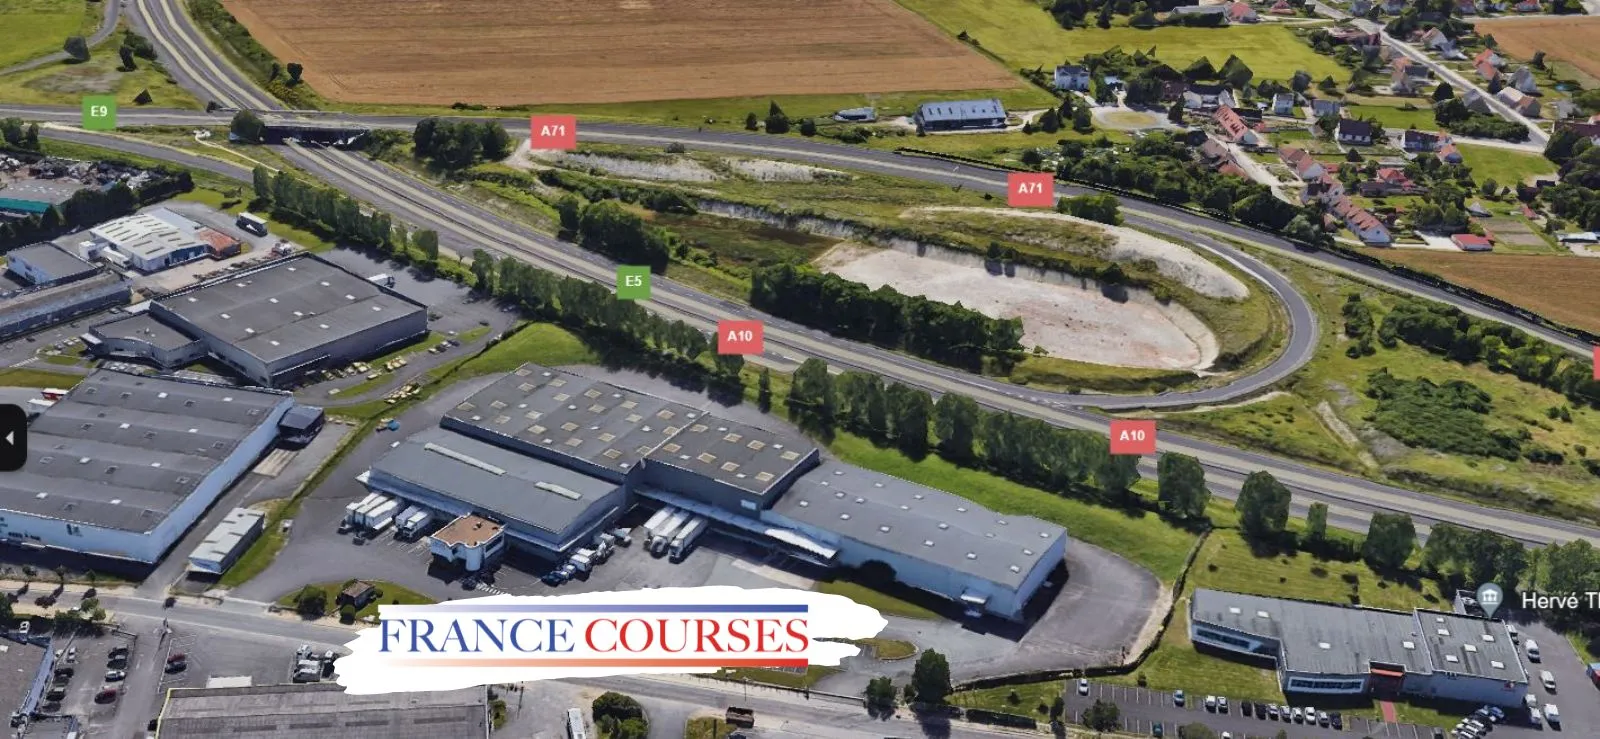 Vue aérienne de France Courses